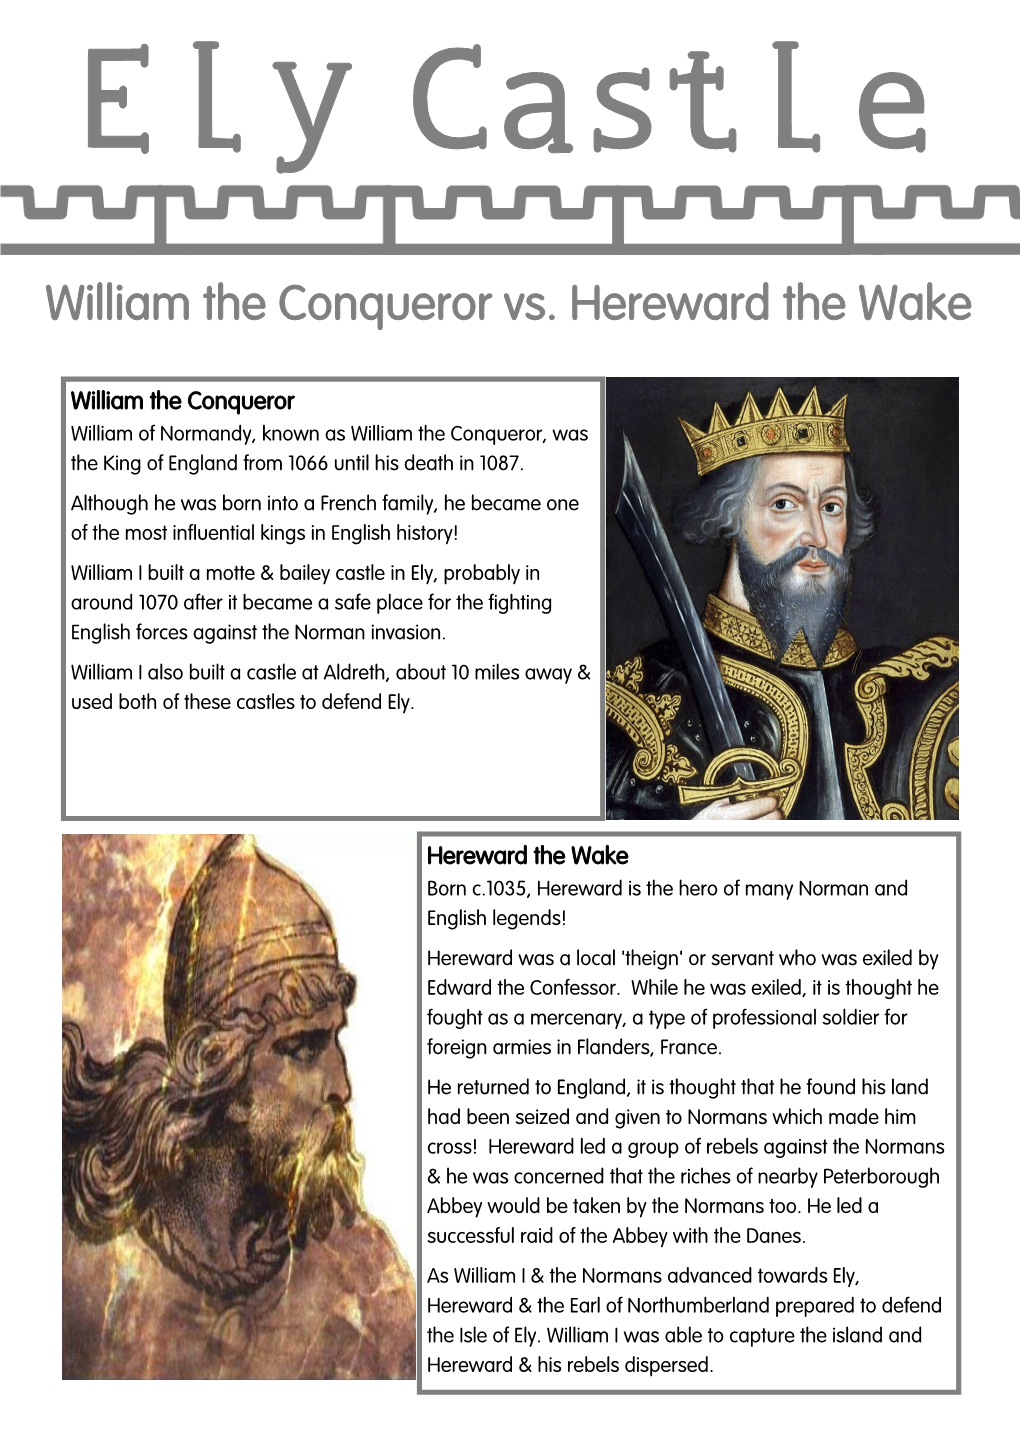 William the Conqueror Vs. Hereward the Wake